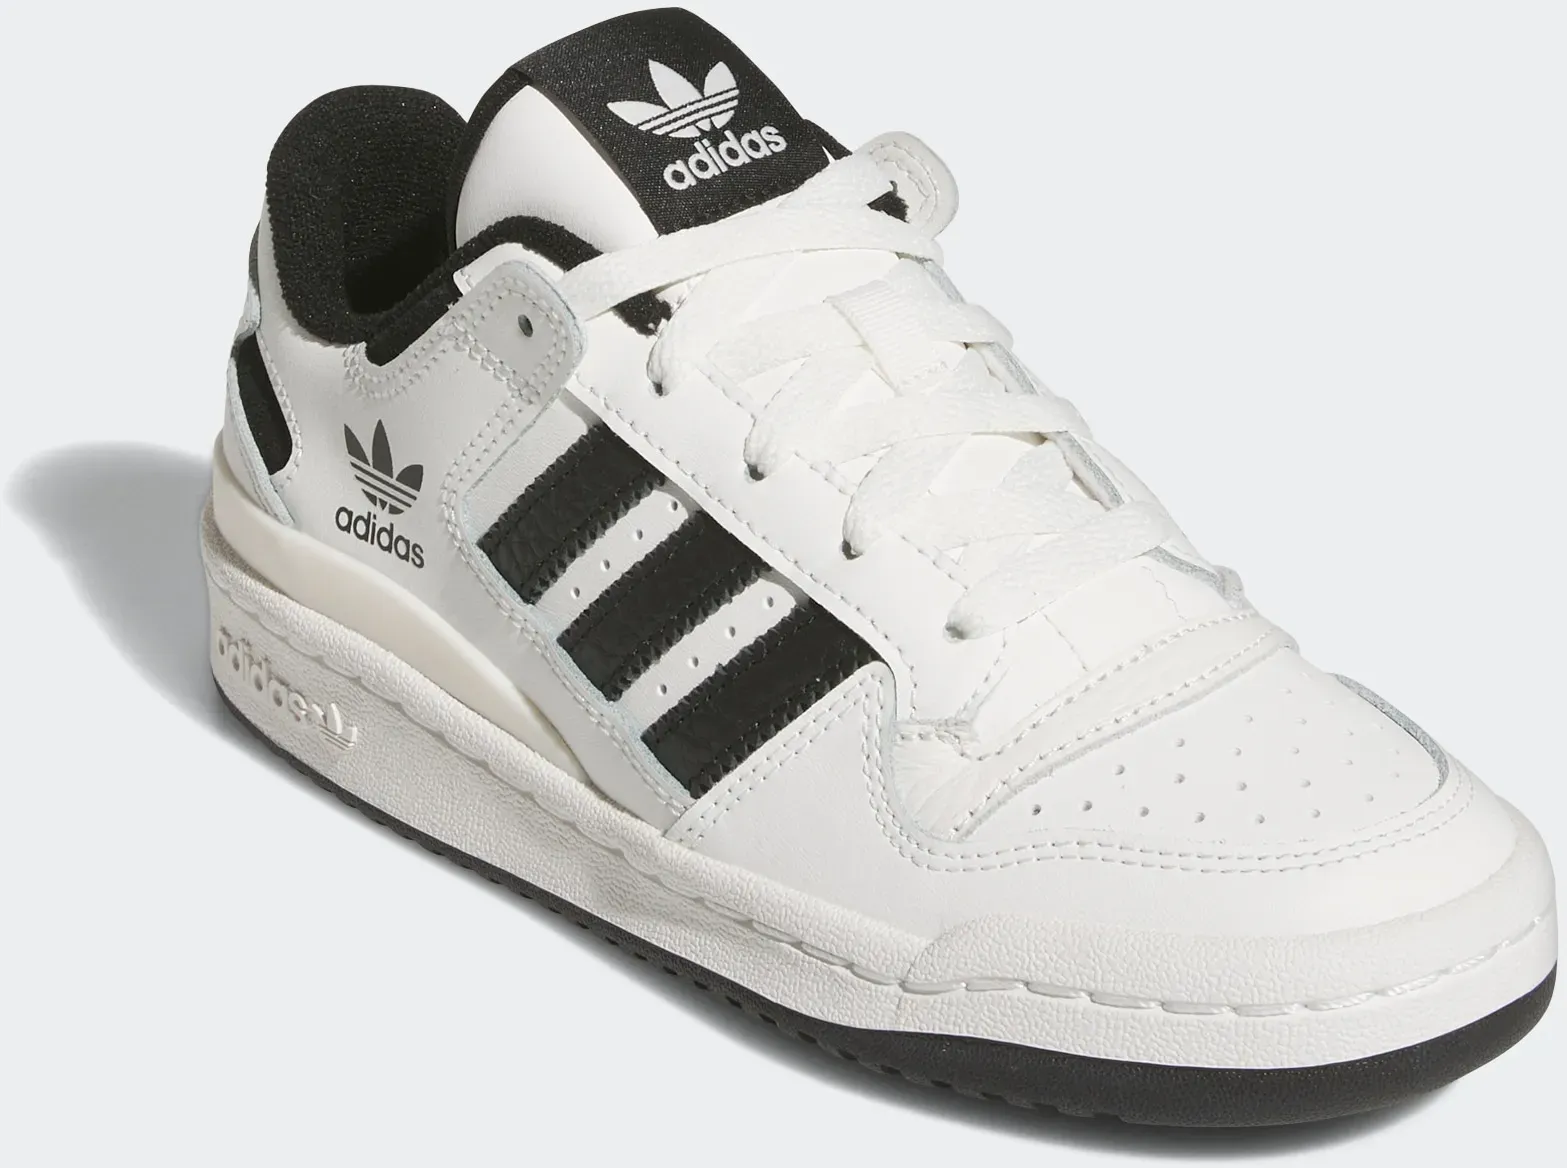 Sneaker ADIDAS ORIGINALS "FORUM LOW CL KIDS" Gr. 38, schwarz-weiß (core white, core black, white) Kinder Schuhe Basketballschuhe